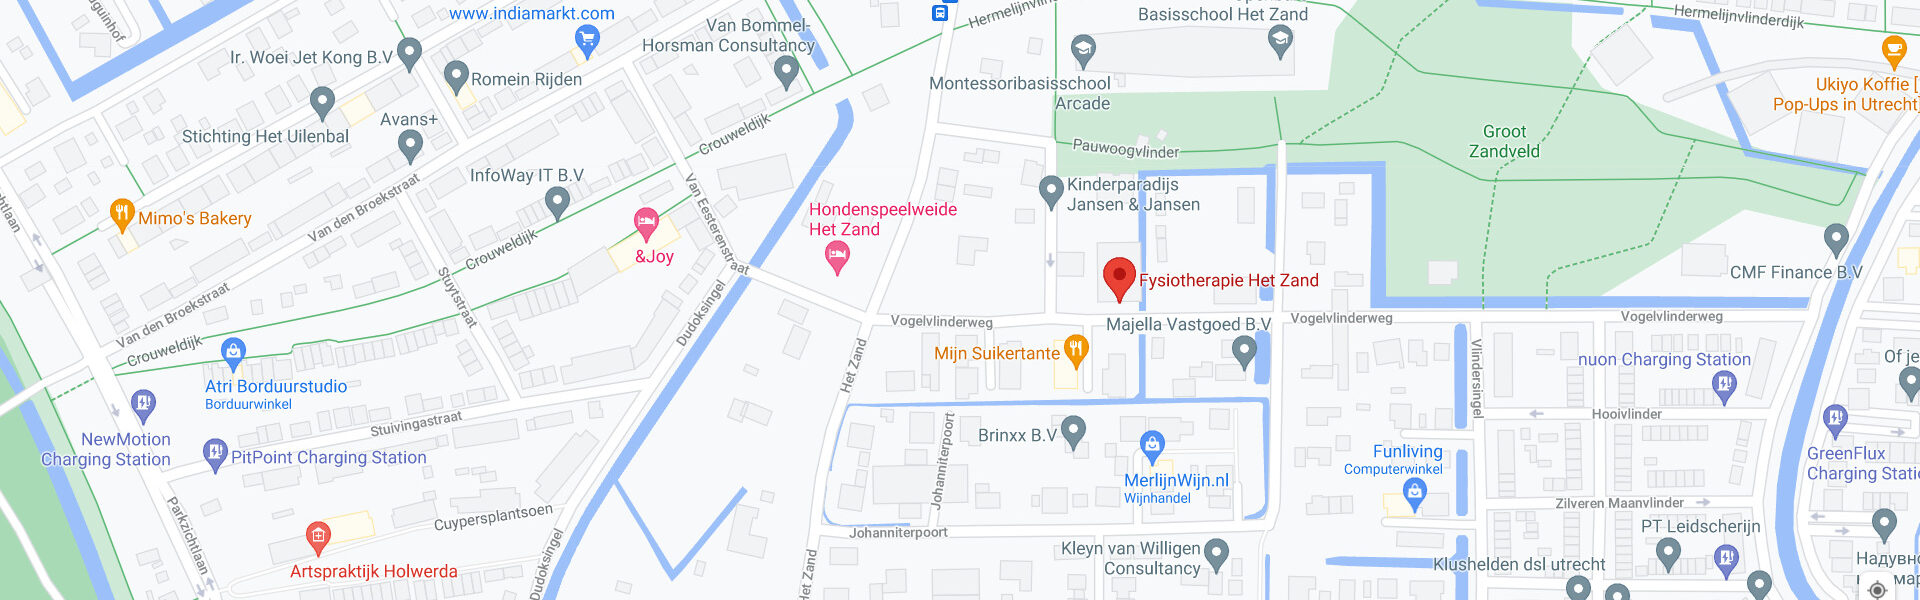 Locatie map Fysiotherapie Het Zand, Vogelvlinderweg, Leidsch Rijn